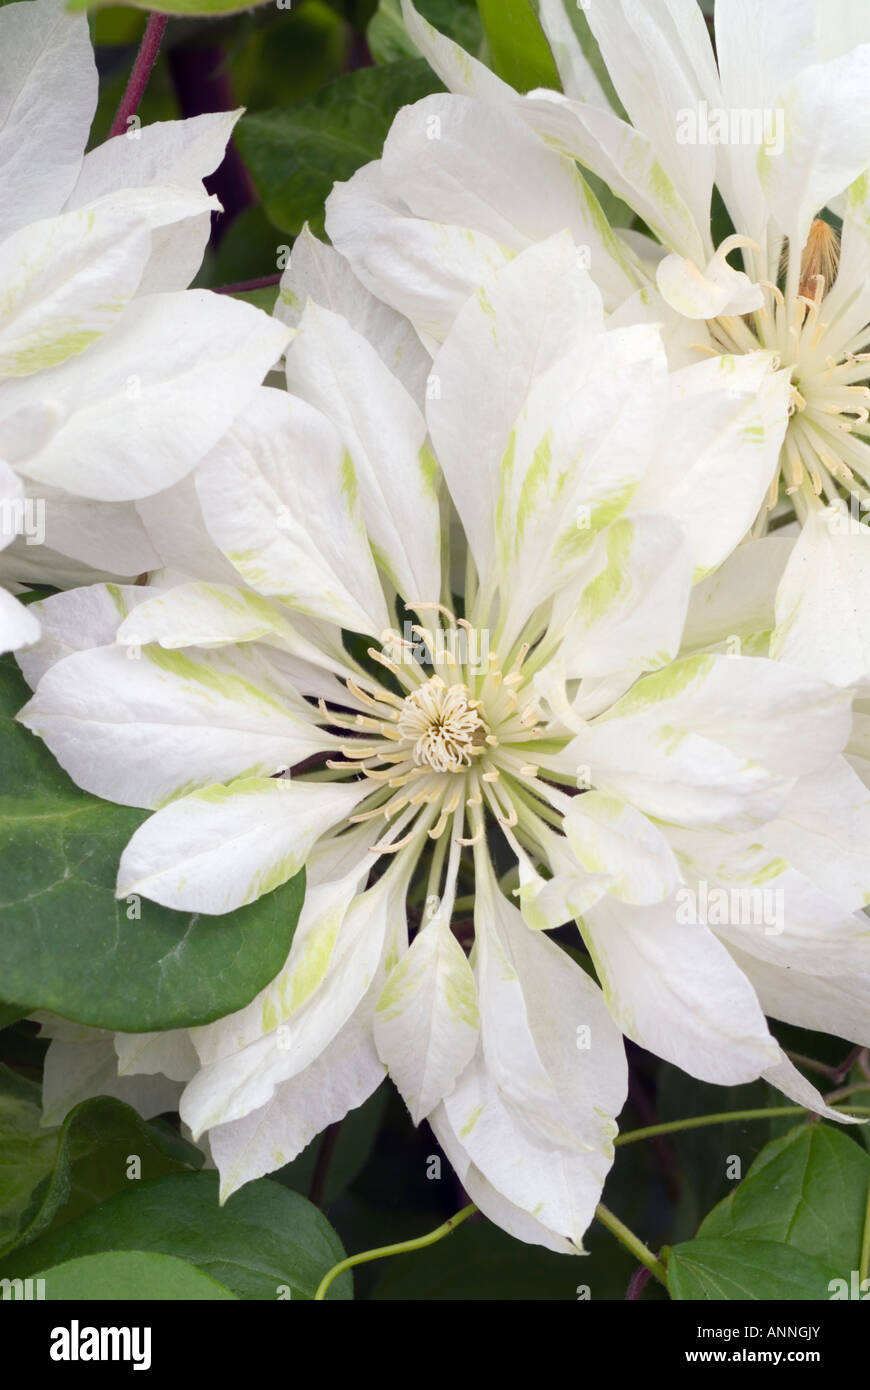 Clematis 'yukiokoshi' flores dobles blancas closeup cerrar patens con matices verdes inusual, jardín de flores perennes vid de escalada Foto de stock